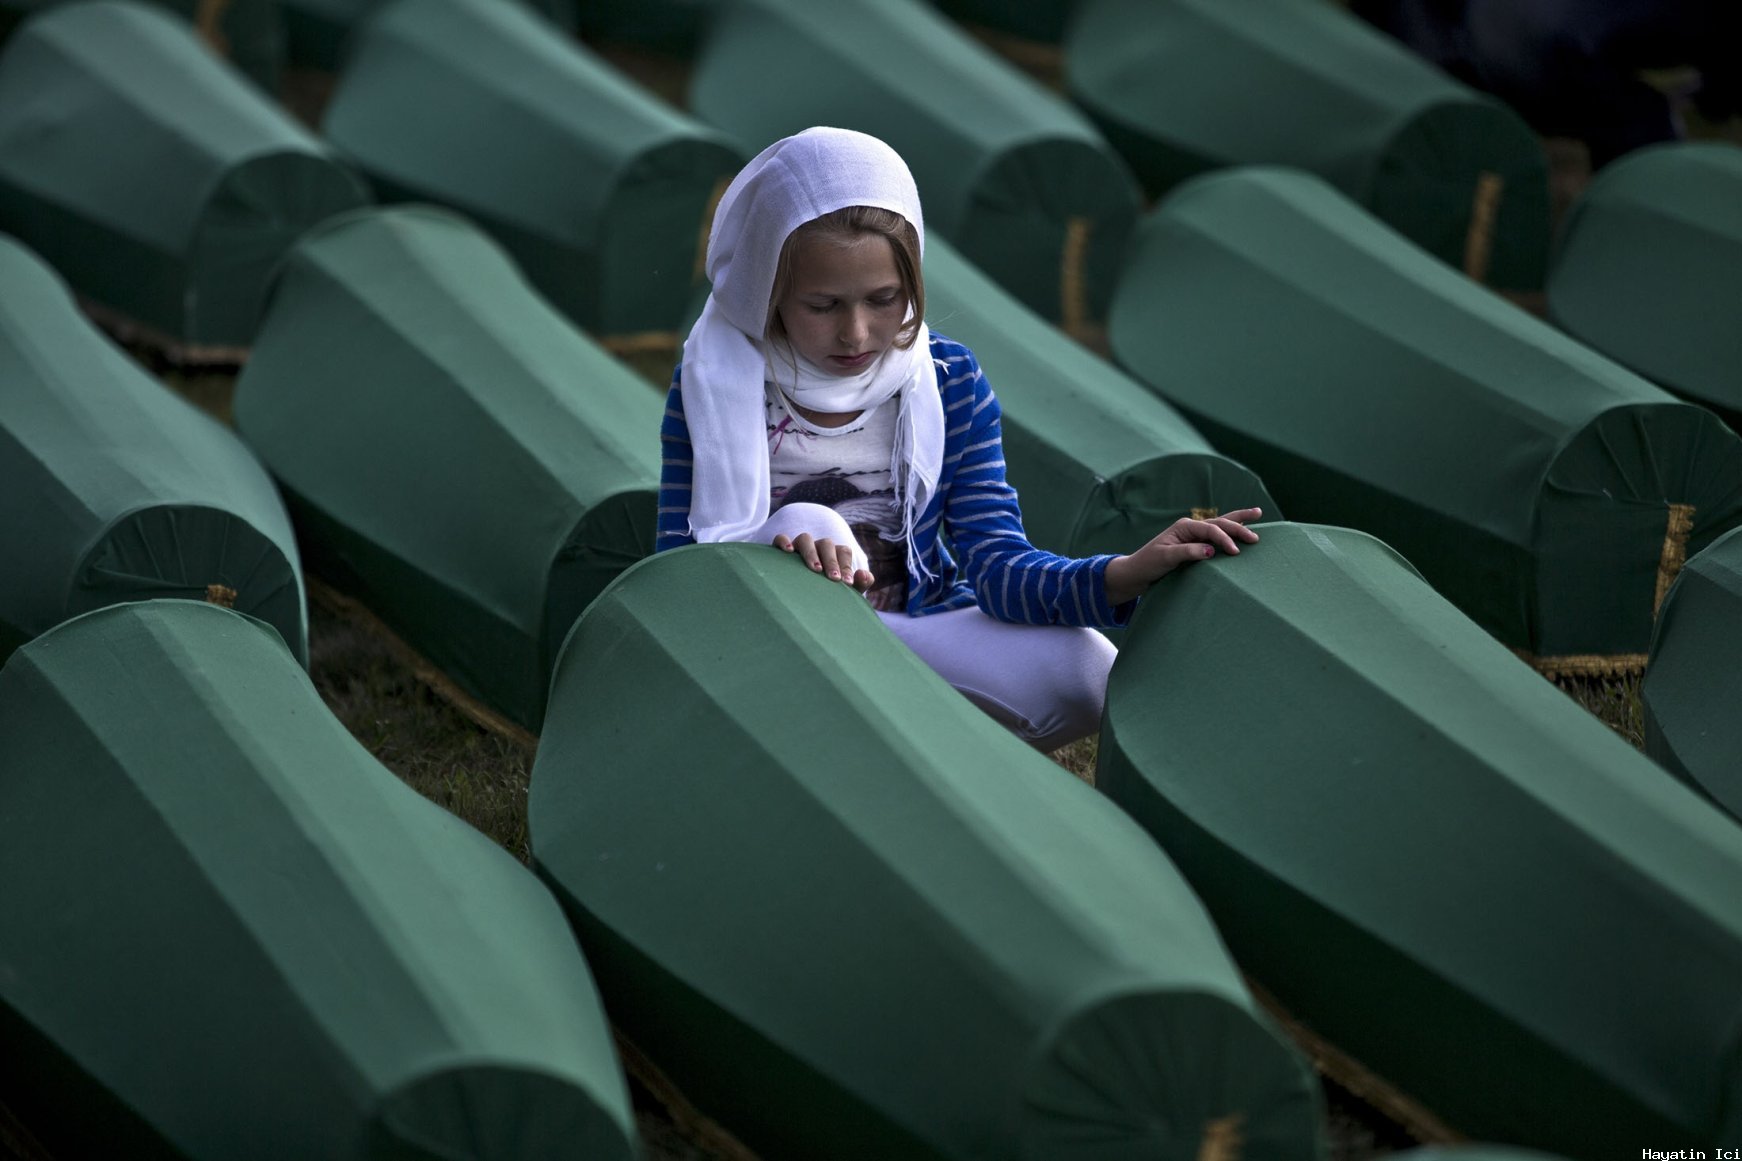 Srebrenitsa katliamı, Bosnalı Müslümanların etnik temizliği